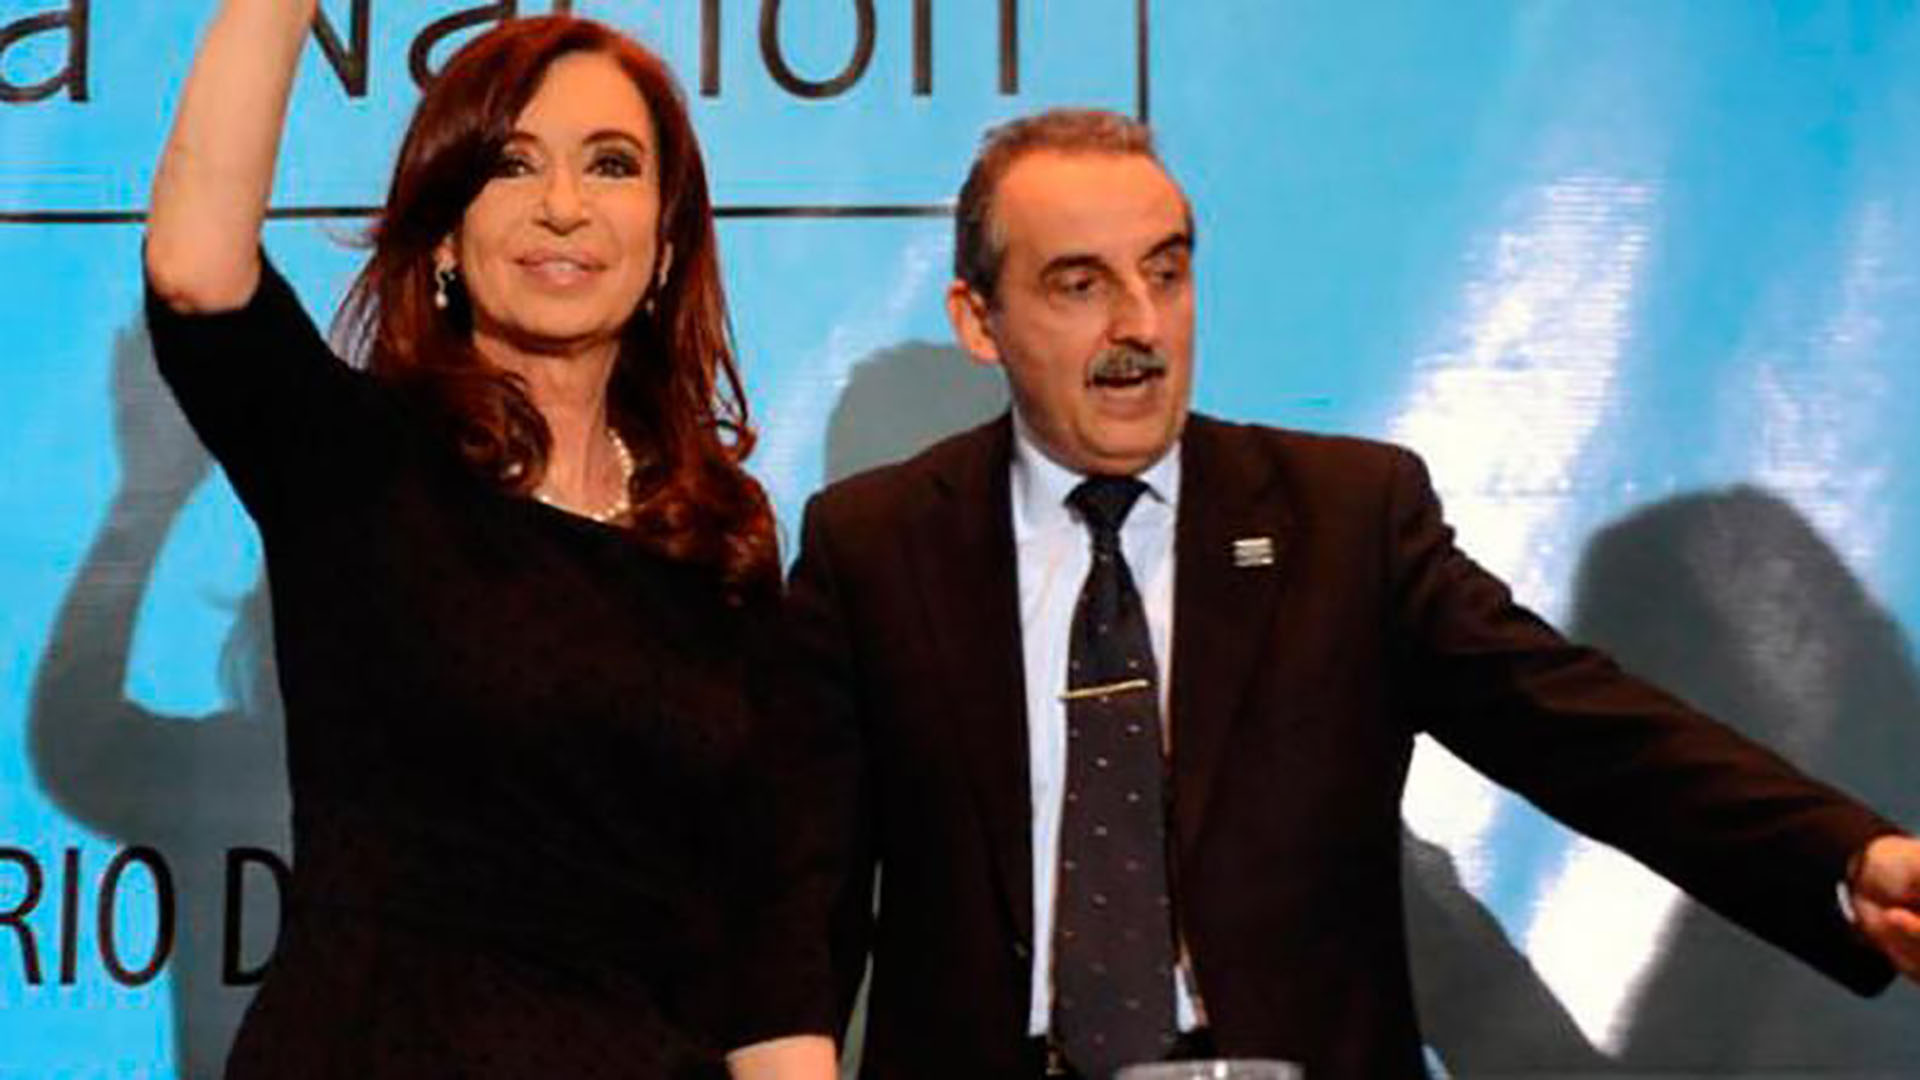 La confesión de Cristina Kirchner sobre la inflación en su gobierno podría consolidar el juicio contra la manipulación de los datos del Indec